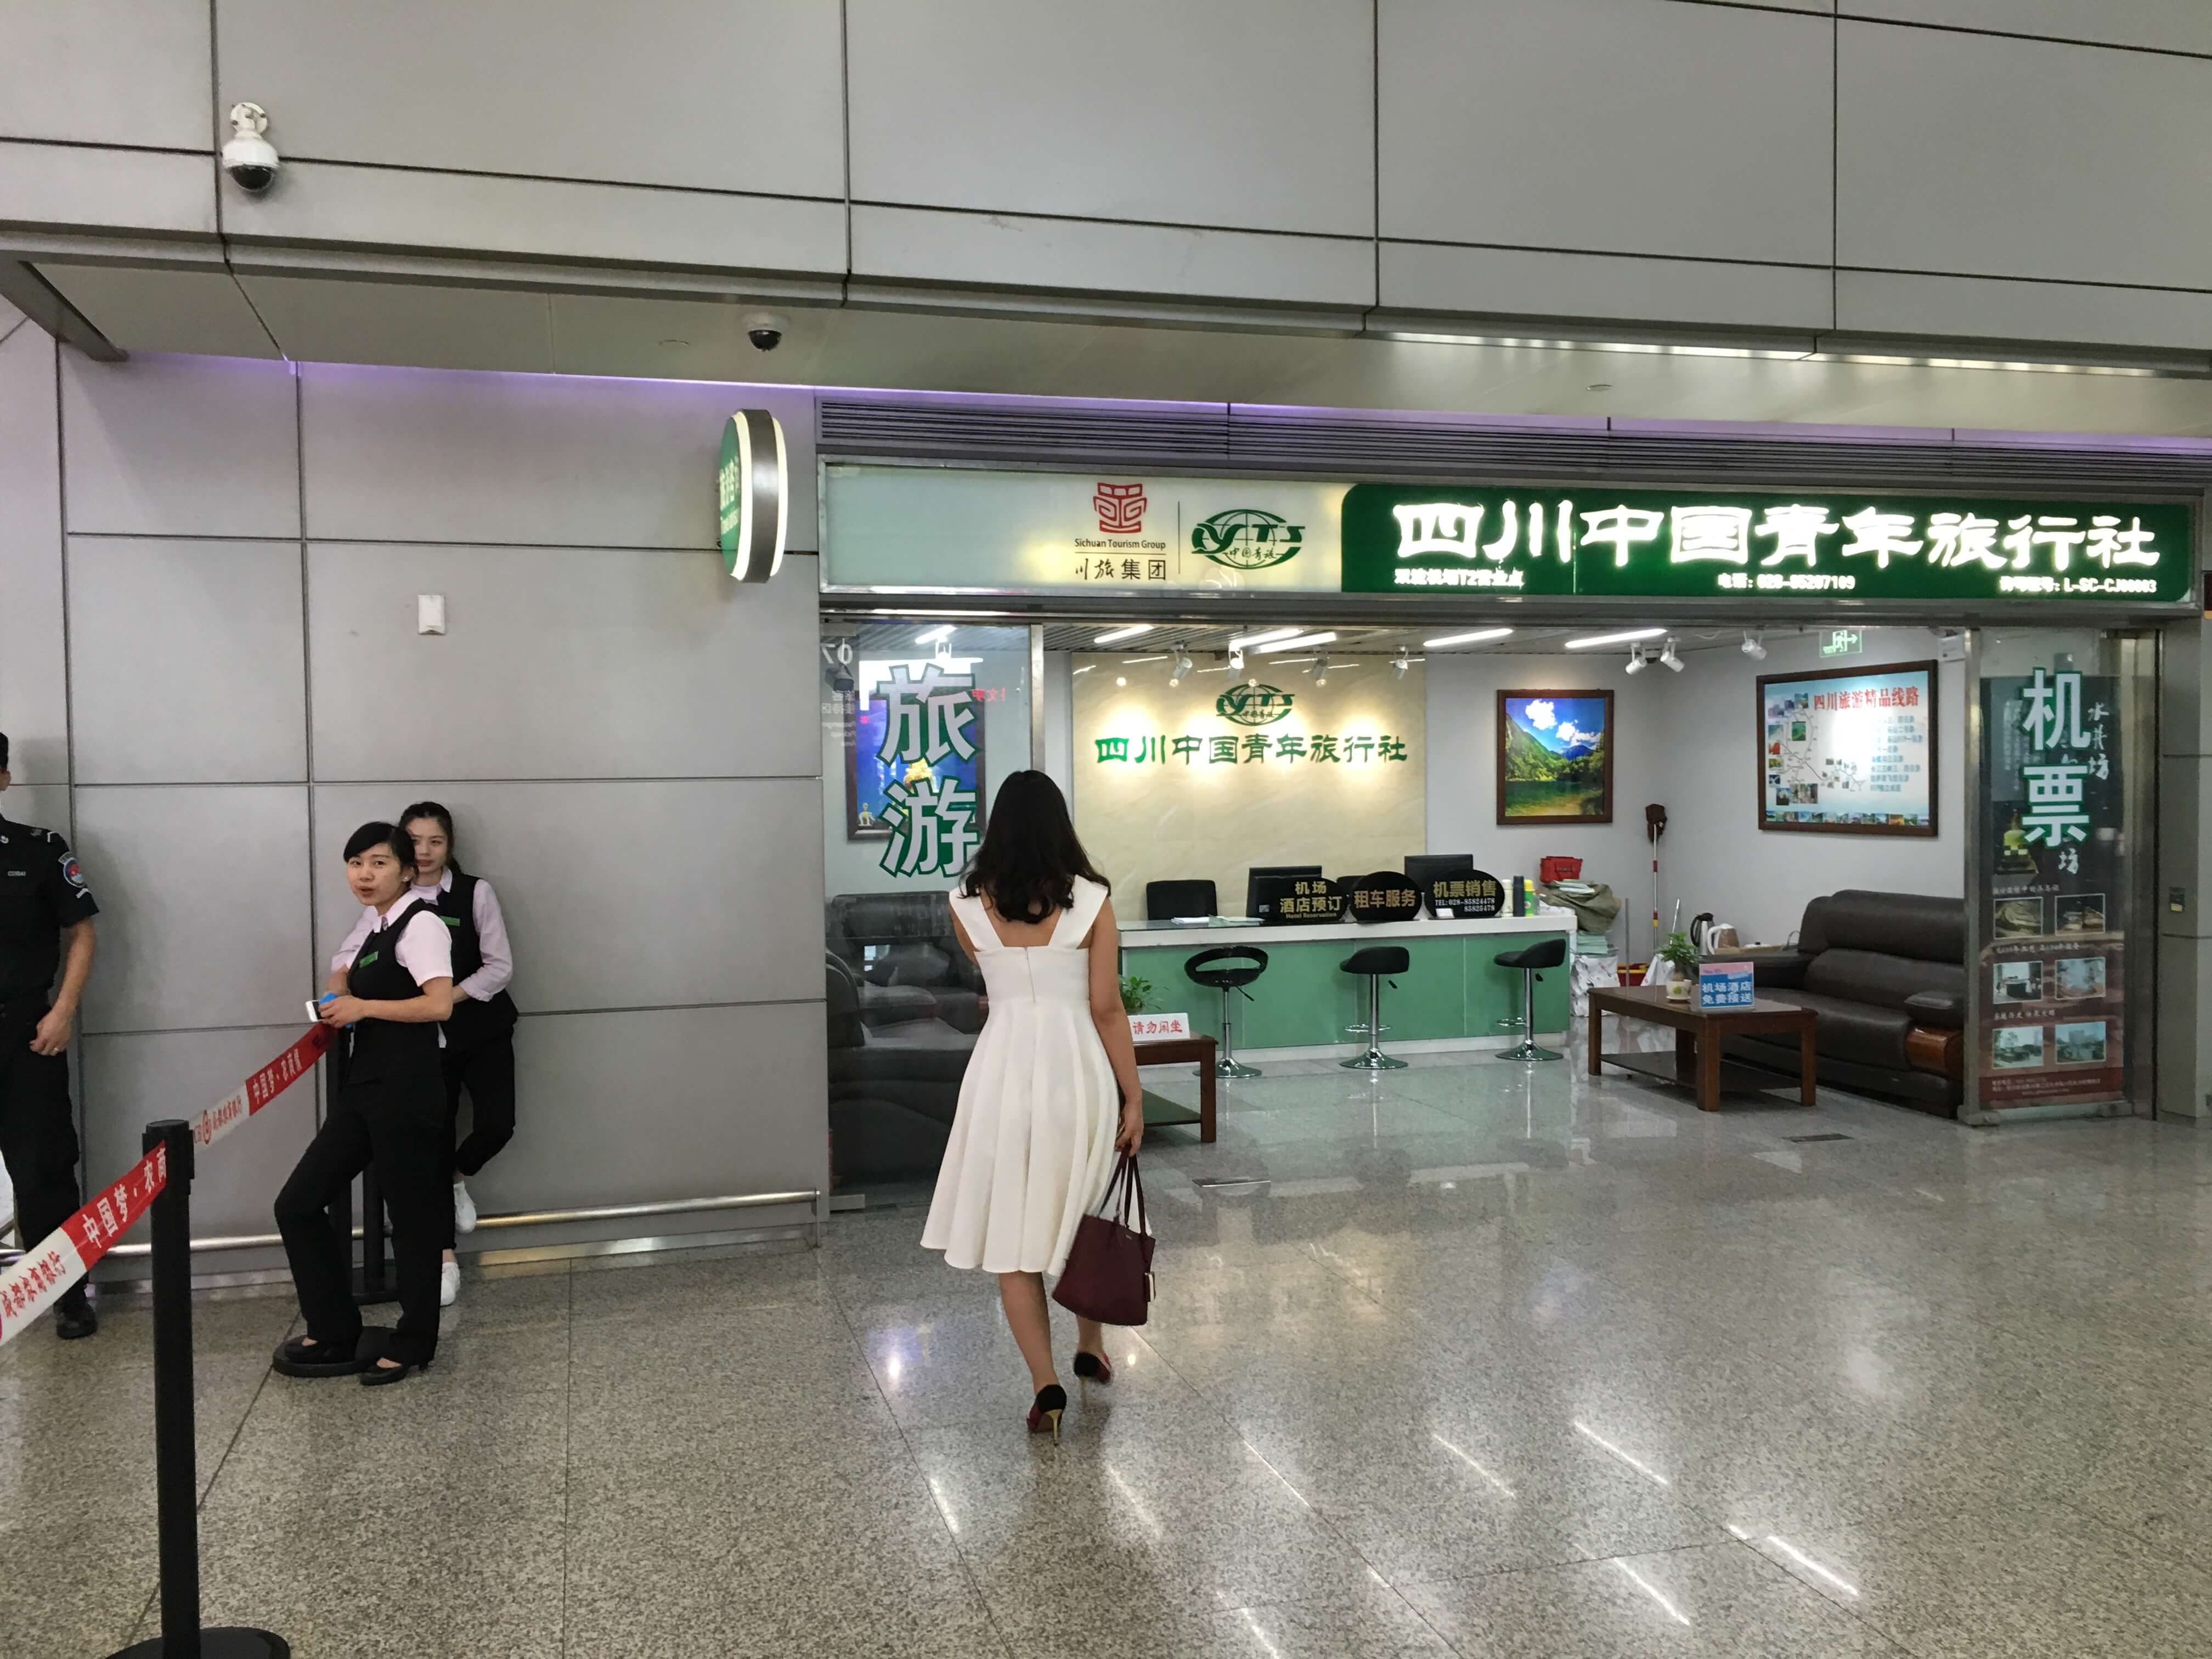 Flughafen in China